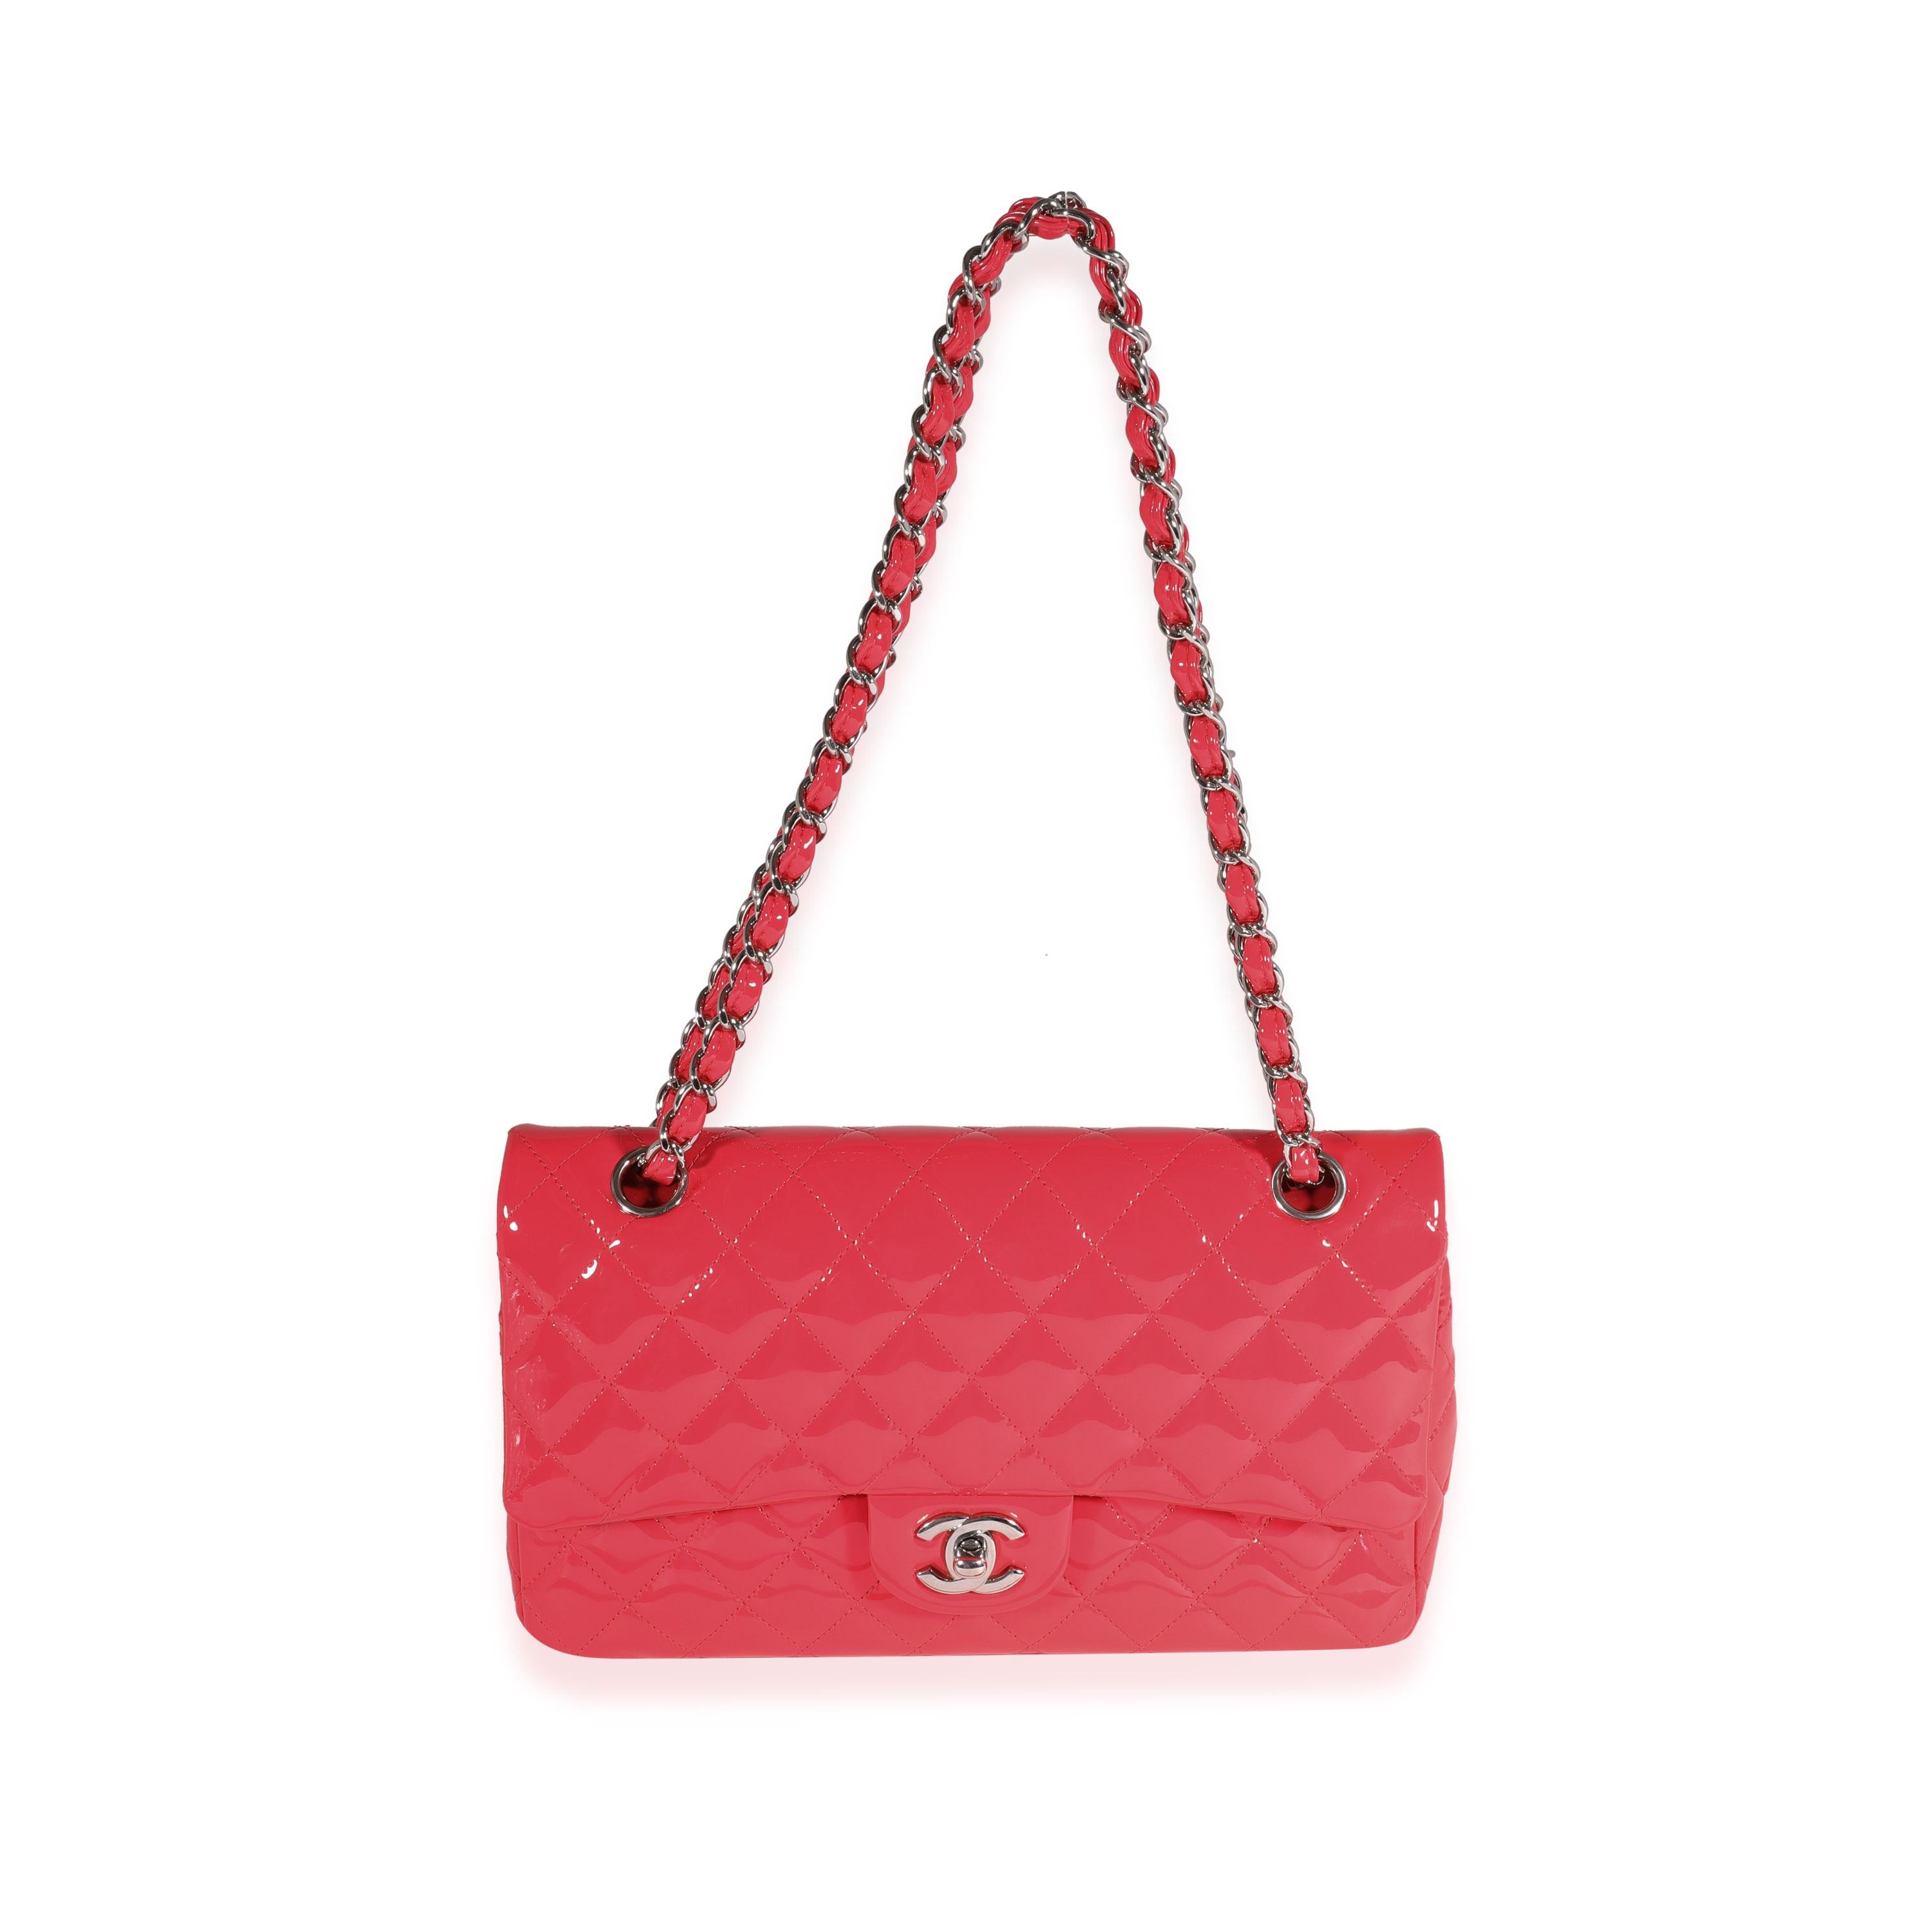 Auflistung Titel: Chanel Candy Pink Gestepptes Lackleder Medium Classic Double Flap Tasche
SKU: 121750
MSRP: 8800.00
Zustand: Gebraucht 
Handtasche Zustand: Ausgezeichnet
Bemerkungen zum Zustand: Ausgezeichneter Zustand. Etwas Plastik bei Hardware.